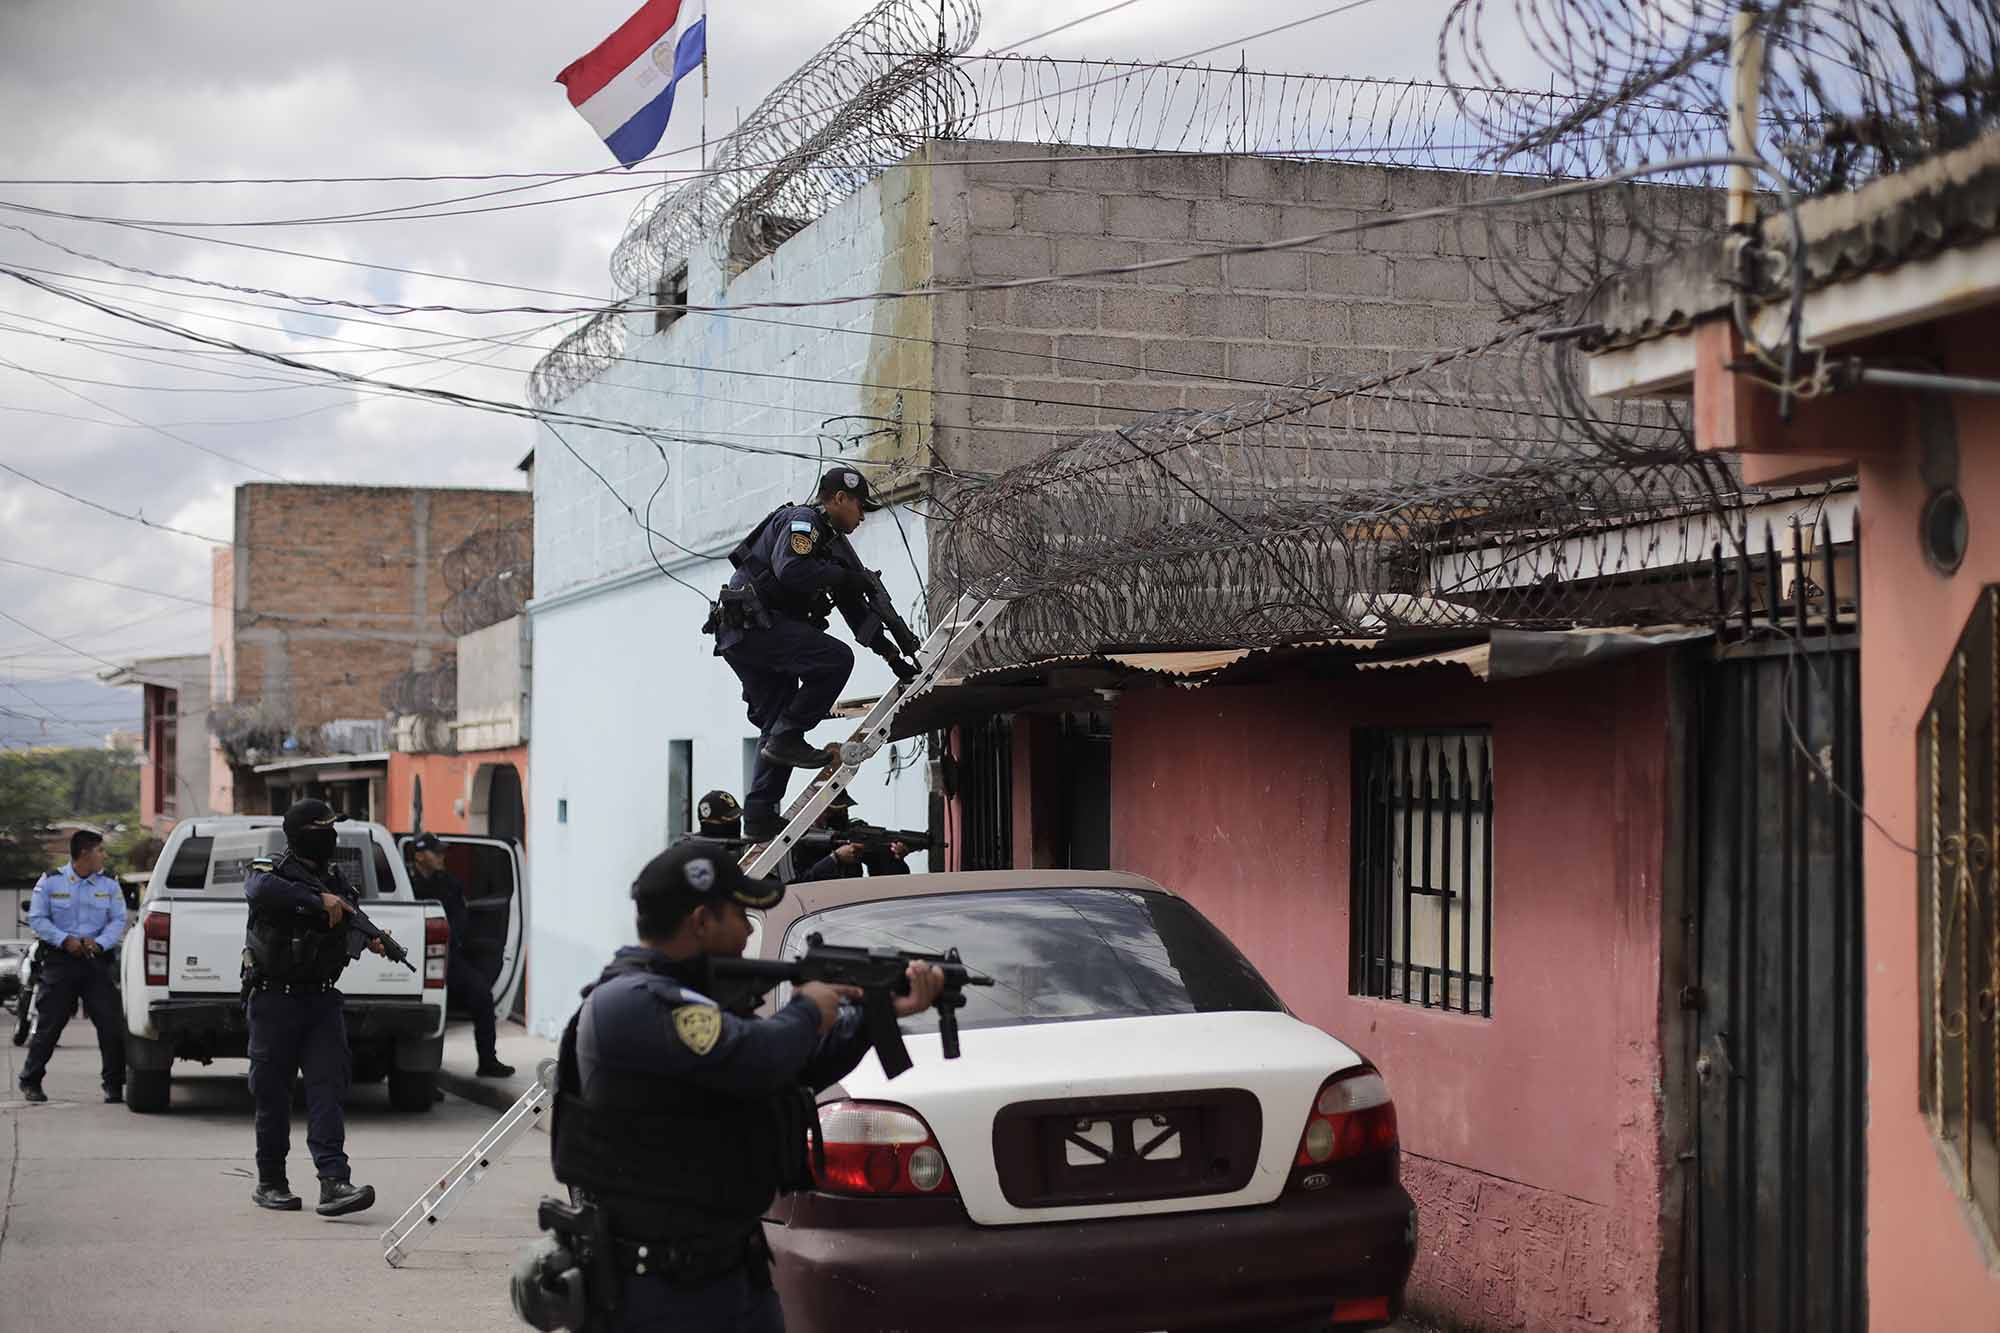 El verdadero estado de excepción en Honduras: capturas arbitrarias, abusos y 49 casos judicializados